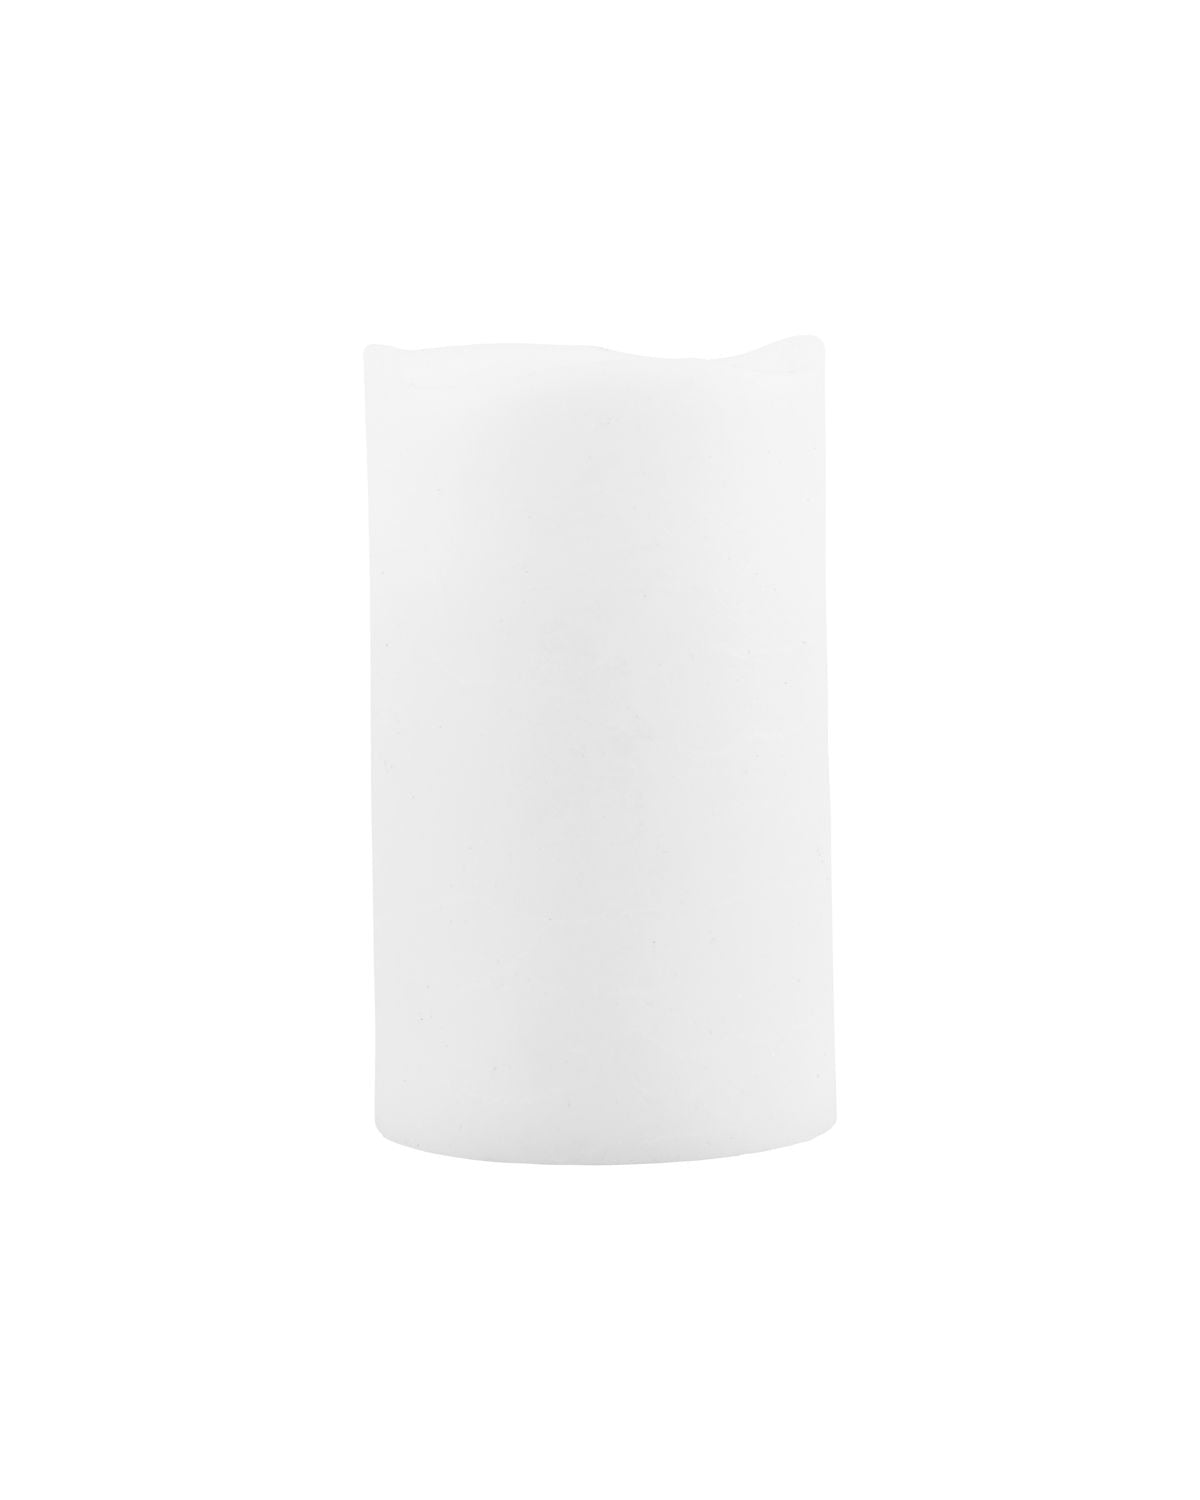 Candle, LED, White H12.5cm freeshipping - Generosa